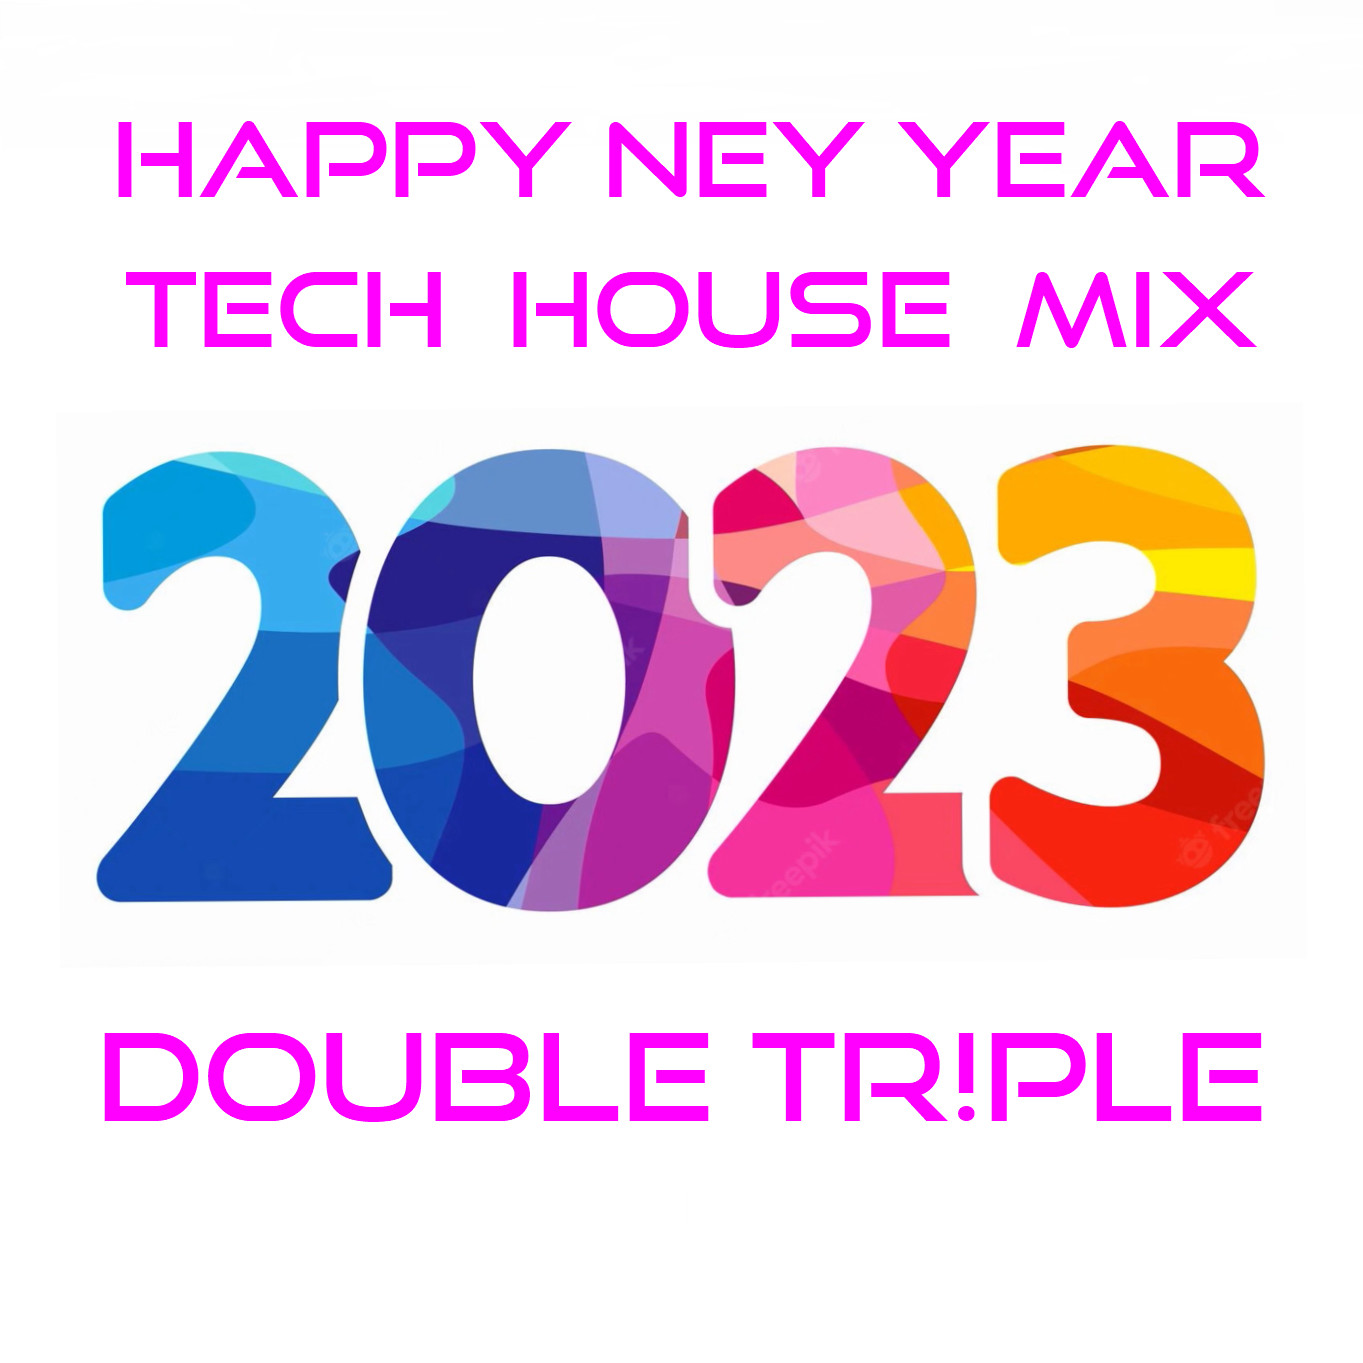 DOUBLE TR!PLE - 2023 HNY Tech House Mix